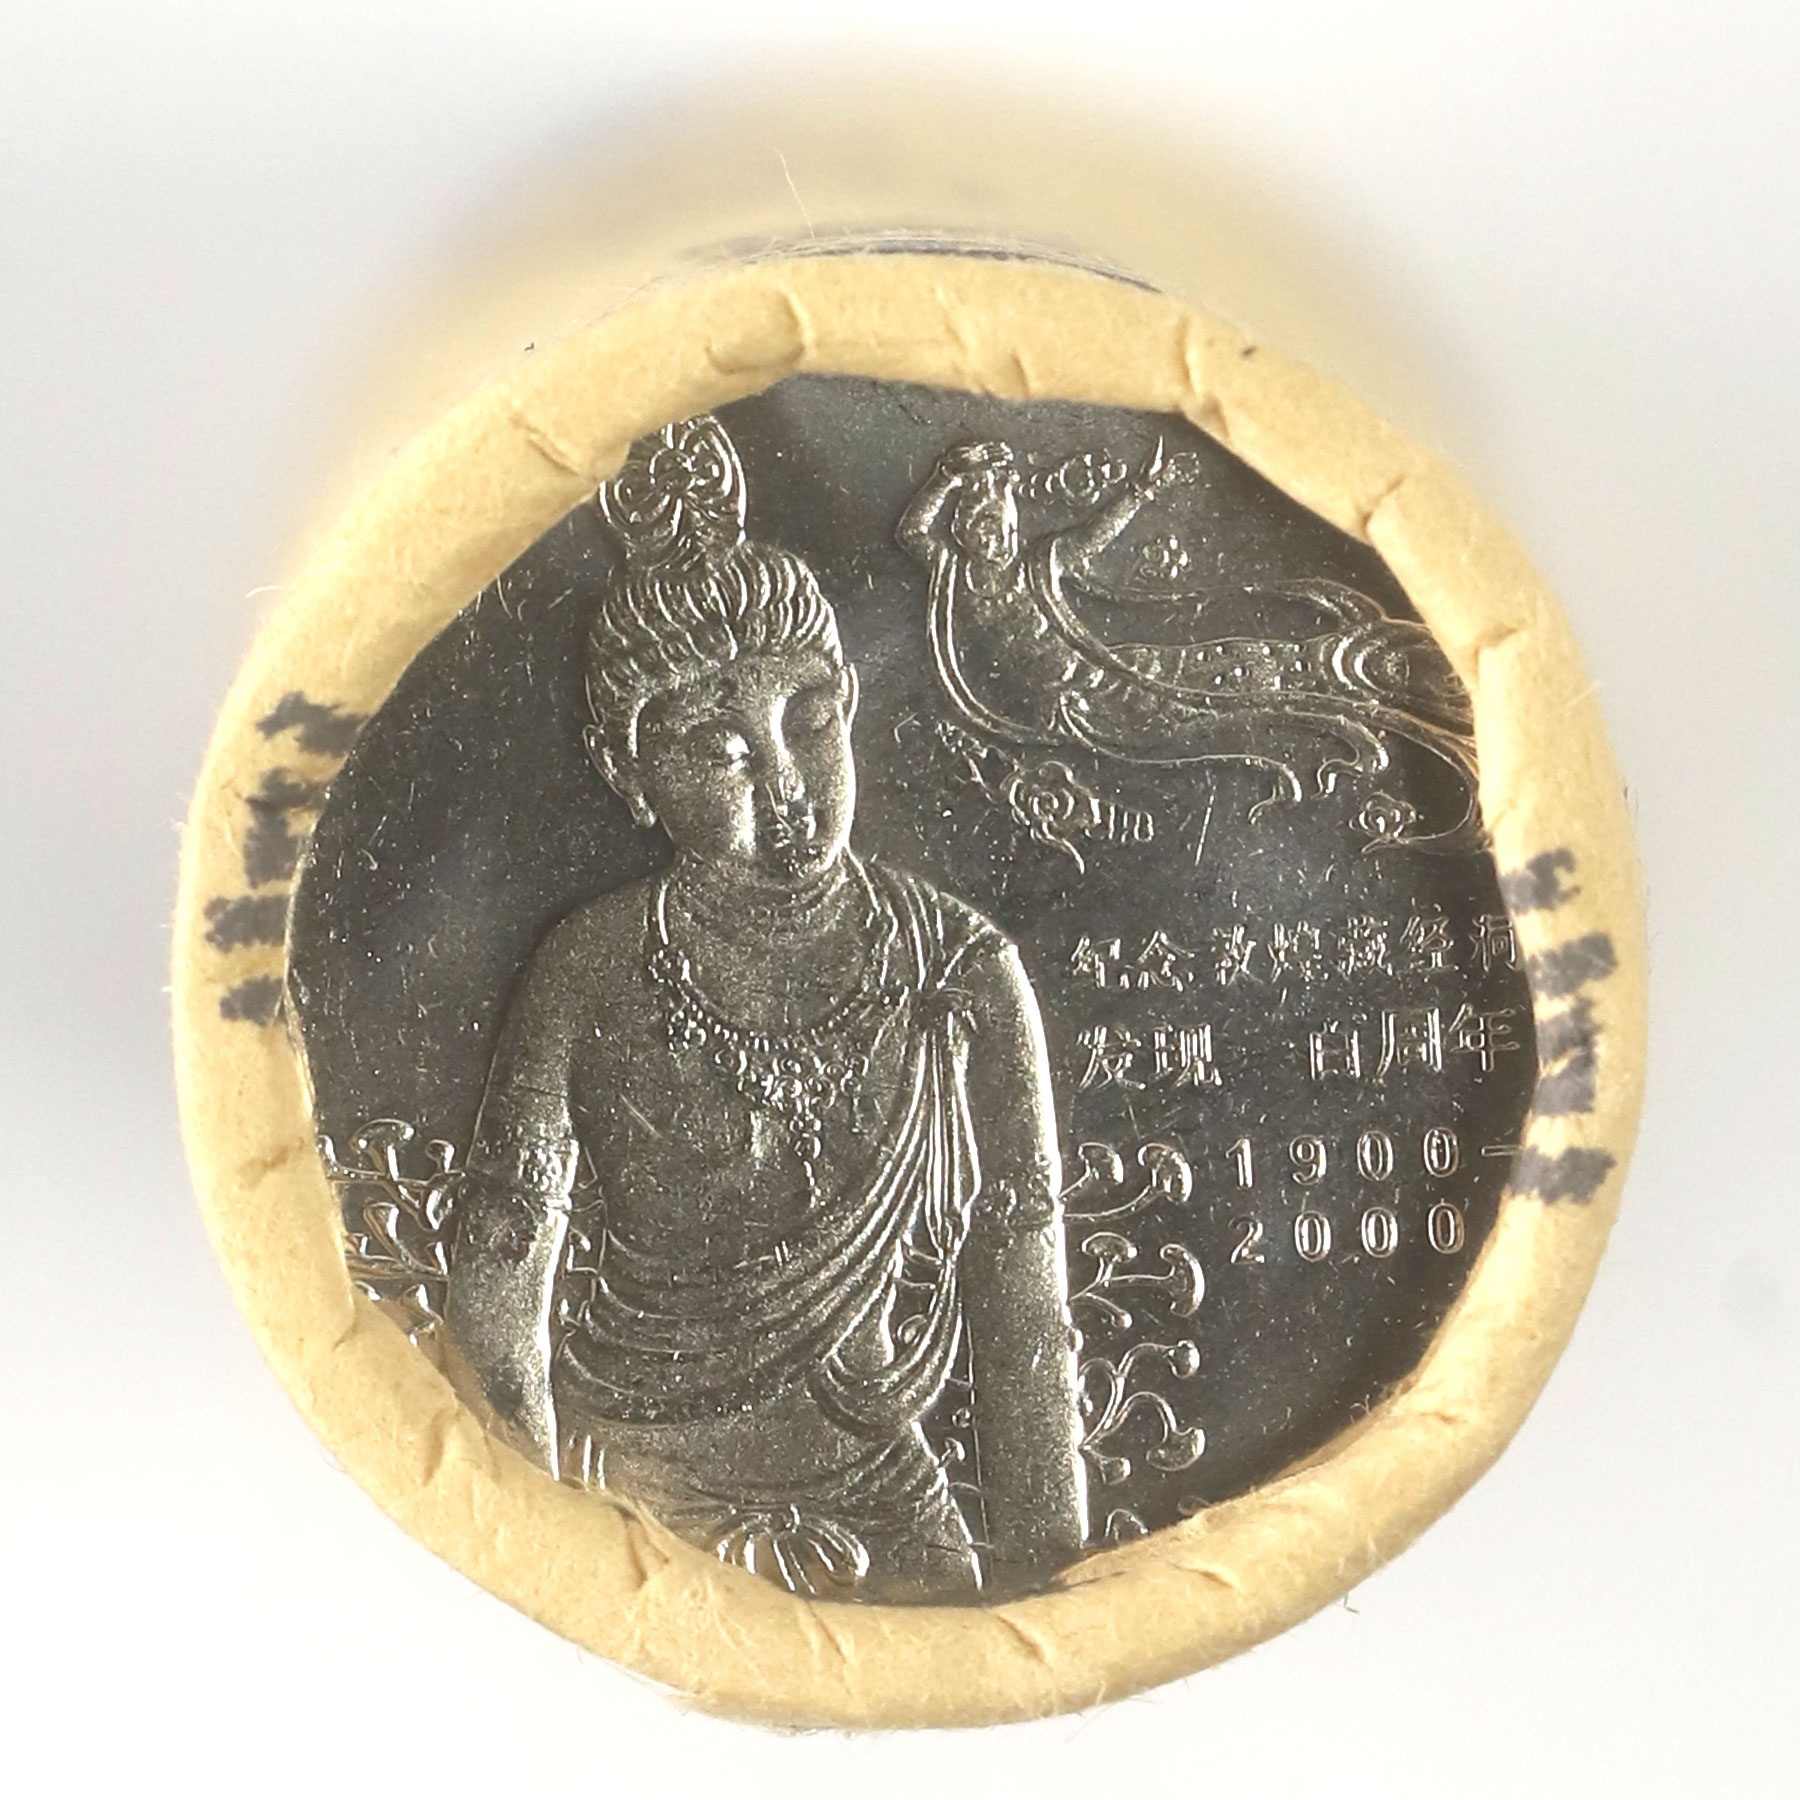 2000年敦煌藏经洞发现100周年纪念币